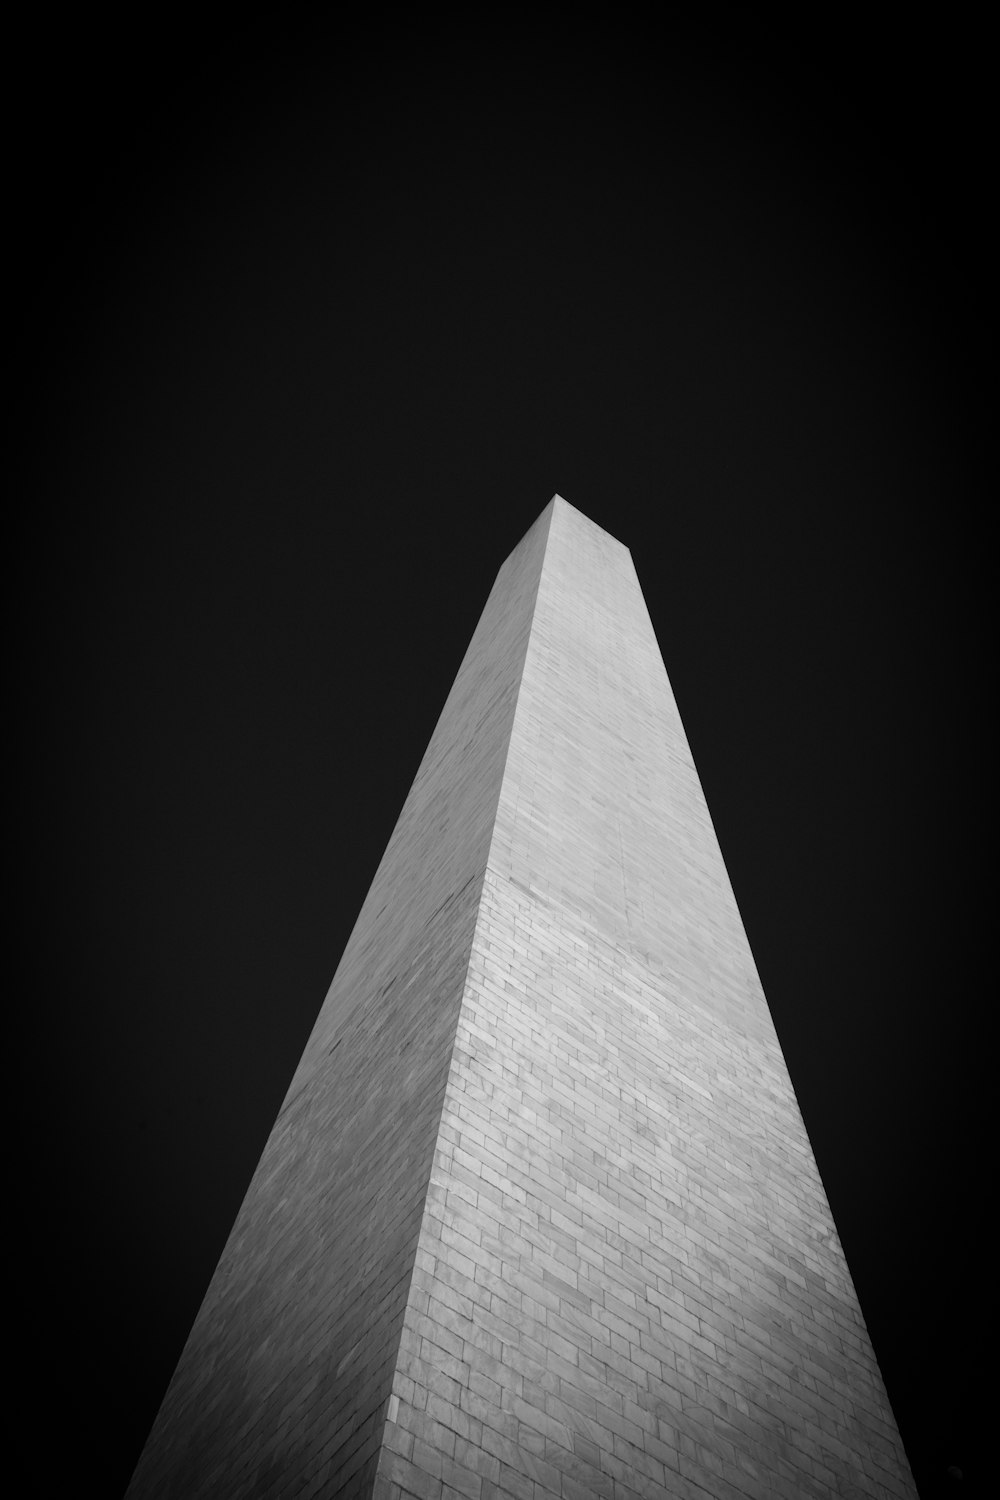 El Monumento a Washington en blanco y negro